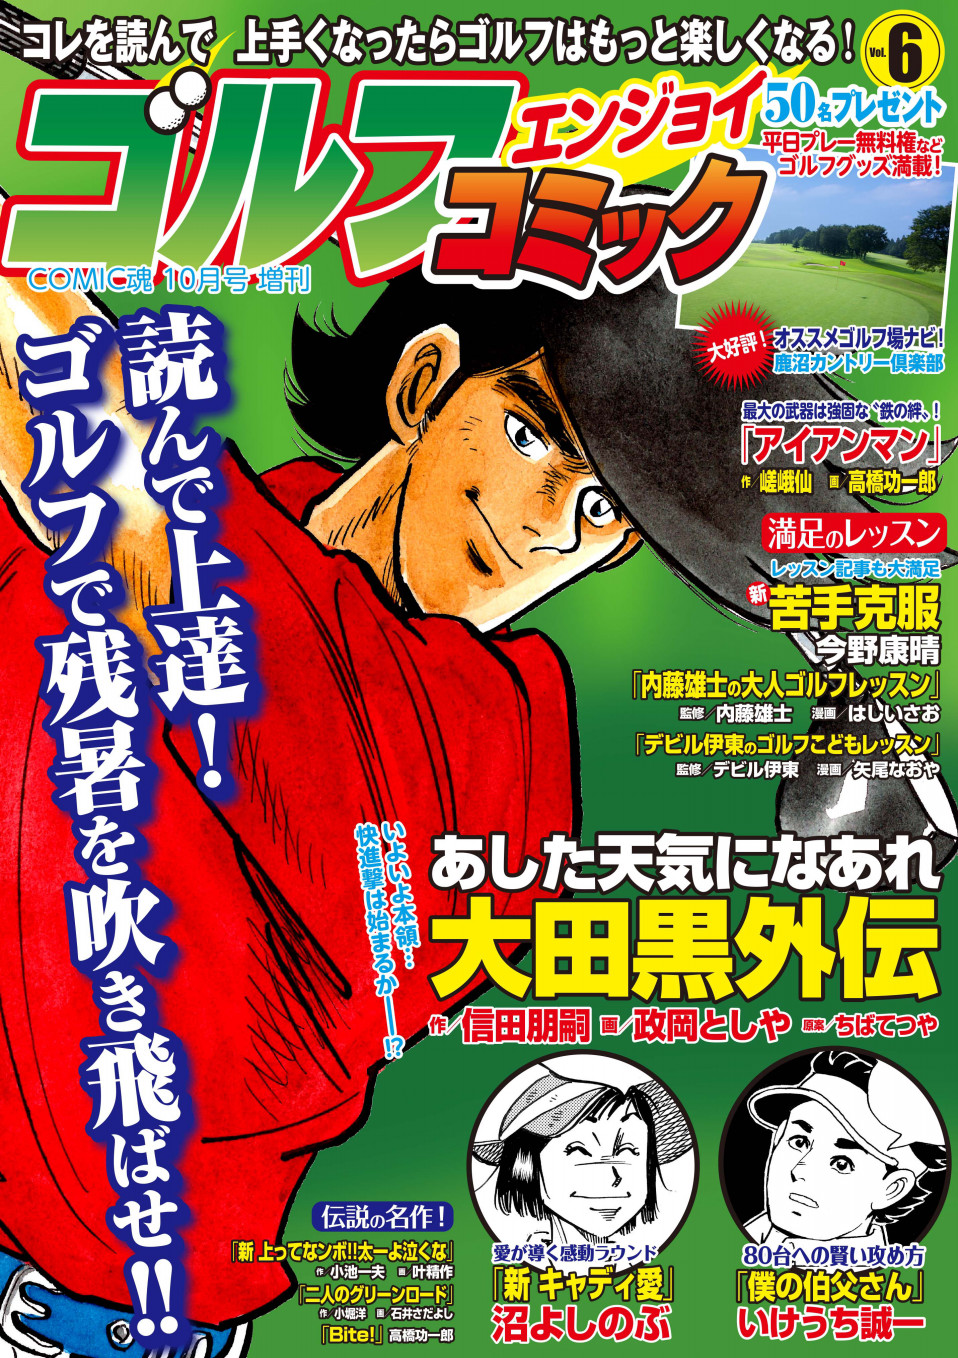 Comic魂10月号増刊 ゴルフエンジョイコミック Vol 6 19年8月26日発売 はちどり 本の企画 編集から Comic魂 女子ごはんなどの本の出版まで